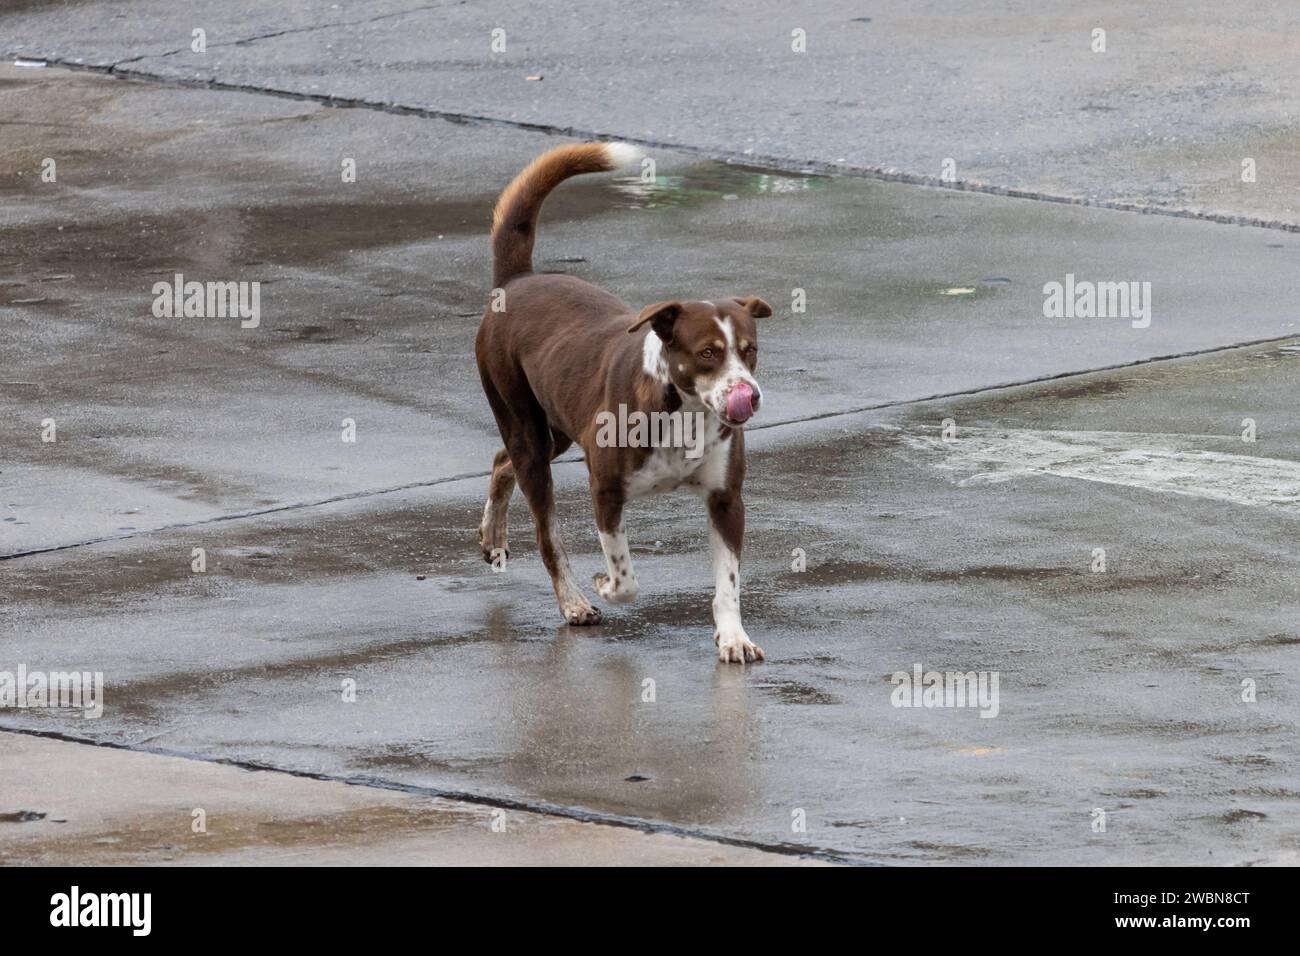 A dog runs along the rainy street Stock Photo